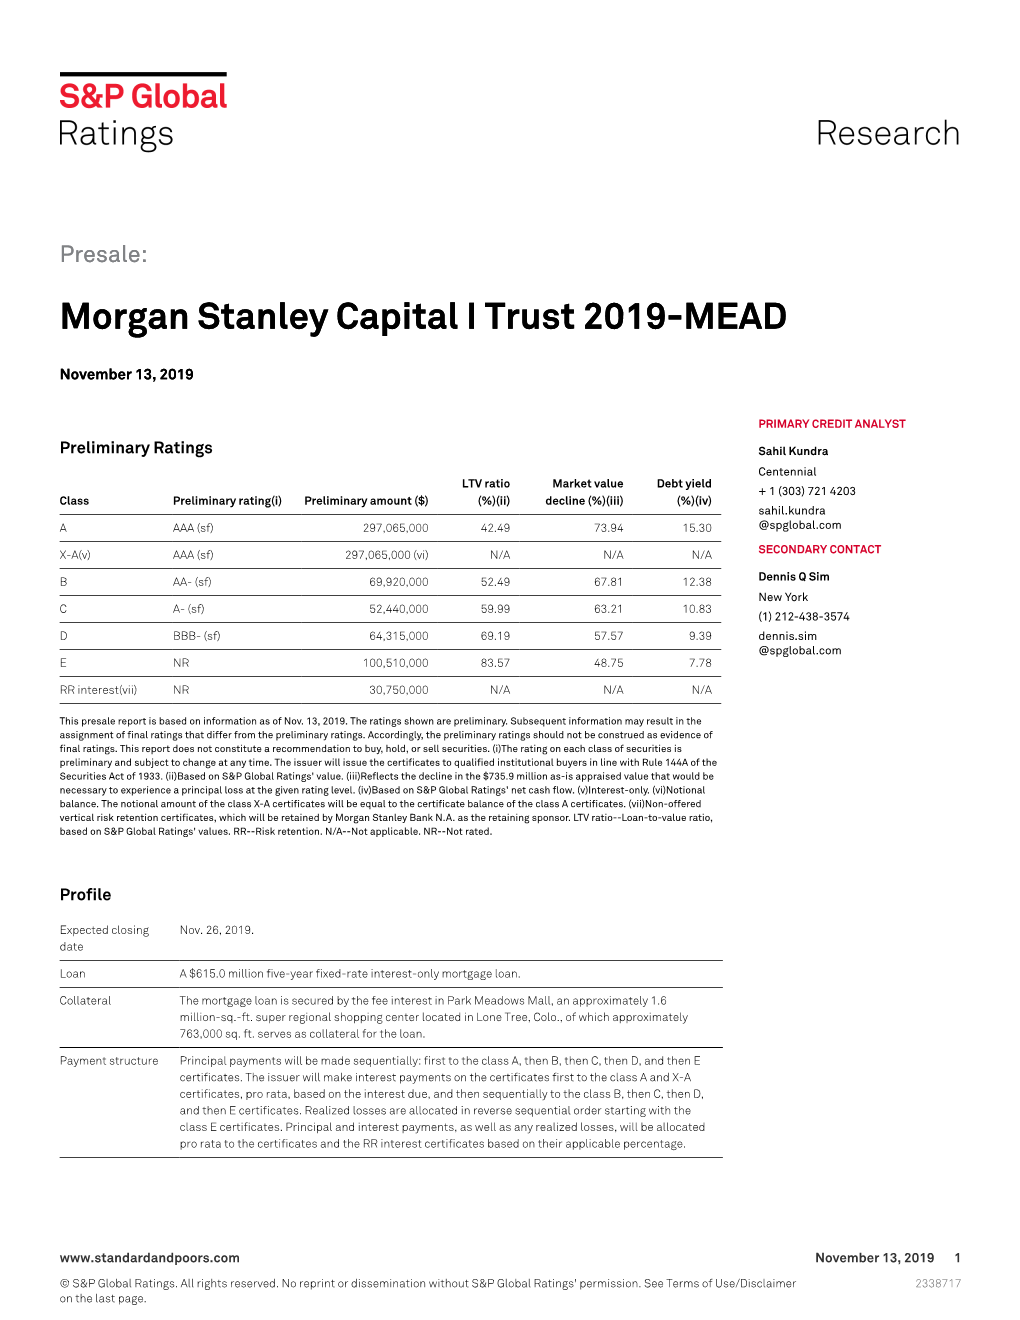 Morgan Stanley Capital I Trust 2019-MEAD